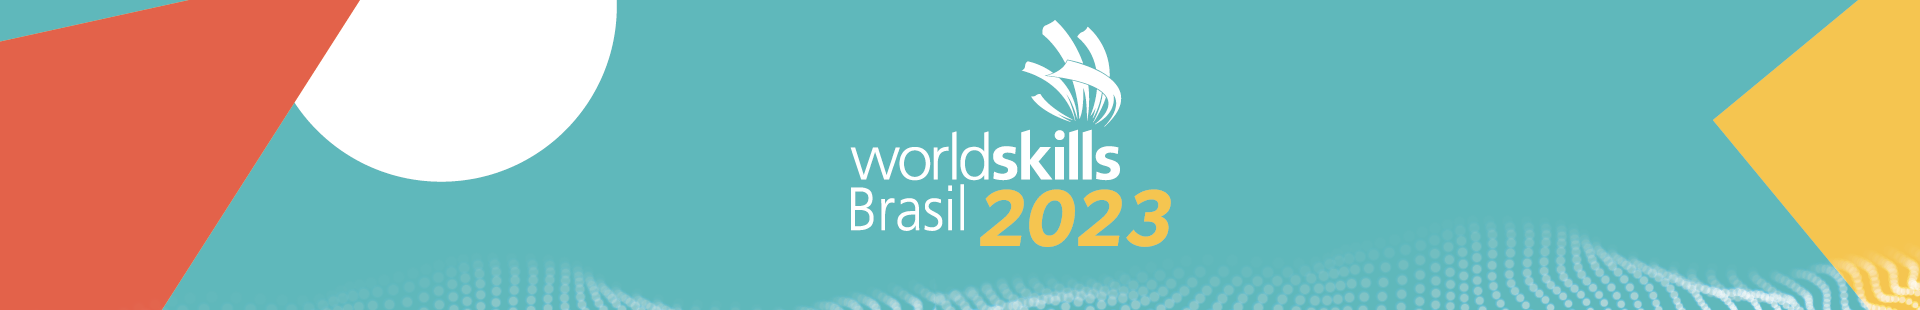 Worldskills Brasil 2023